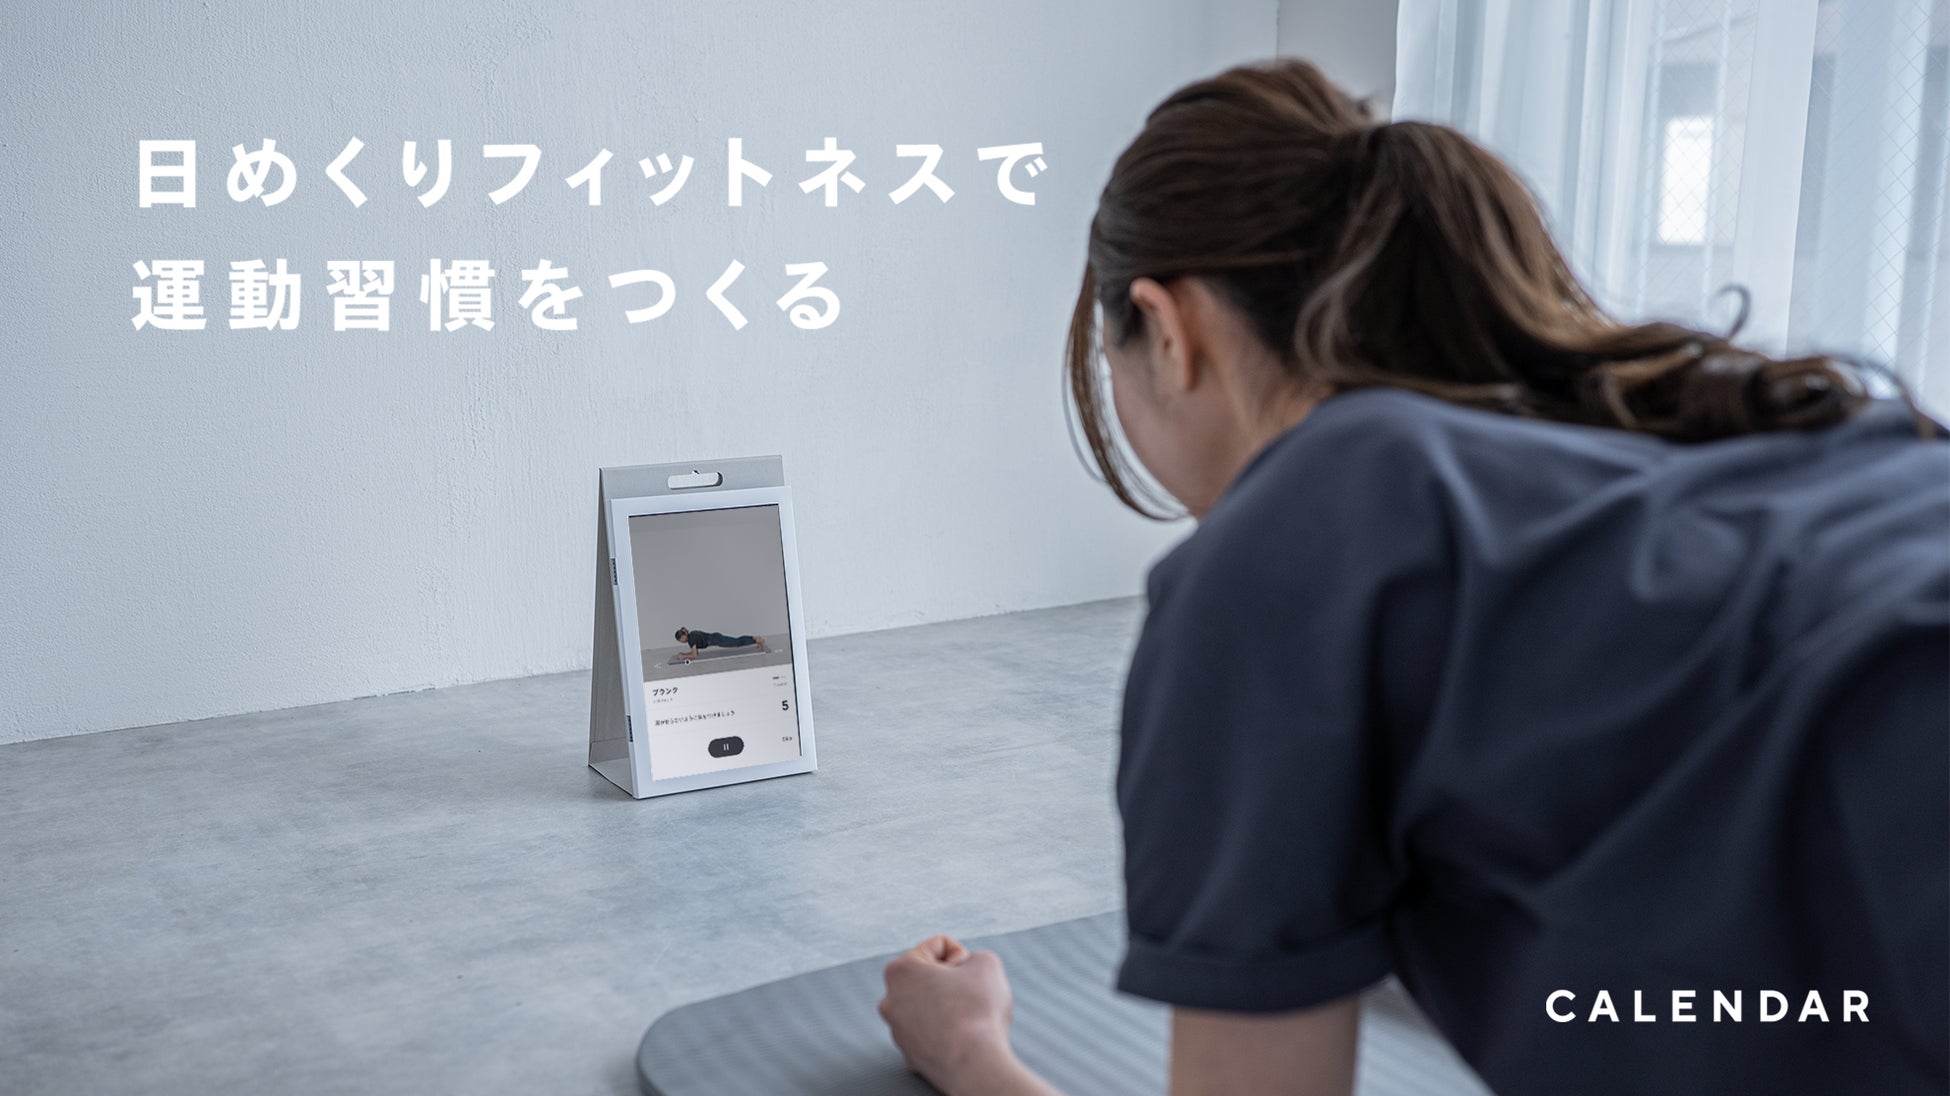 ZOZOCOSMEで「ARメイク」が4月5日よりサービス開始！自宅にいながらワンタップでコスメアイテムのお試しが可能に